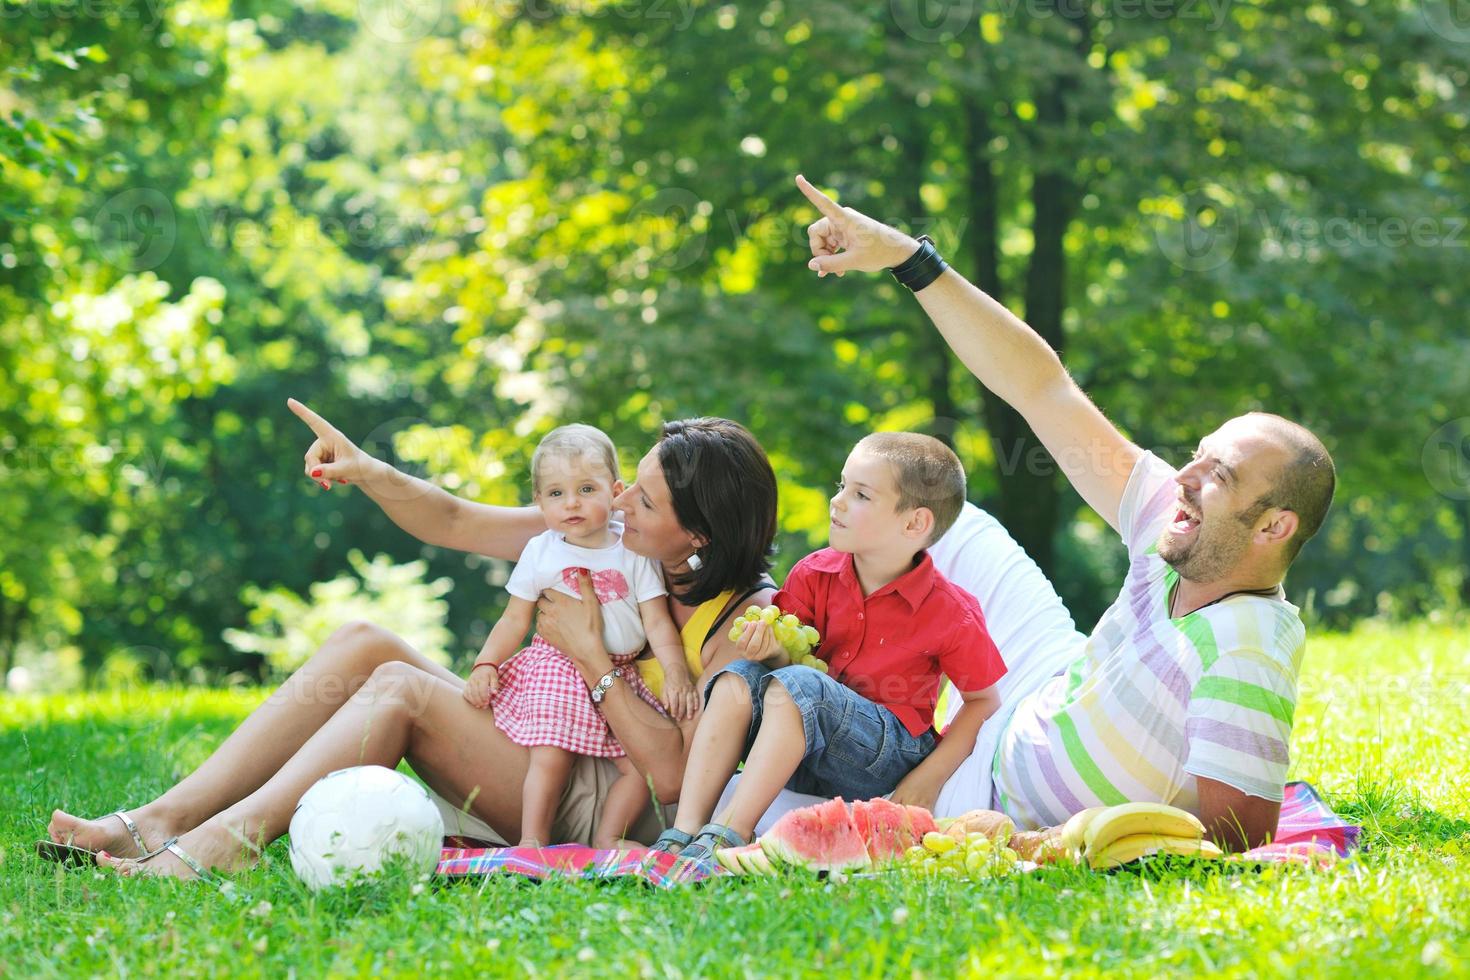 Feliz pareja joven con sus hijos divertirse en el parque foto